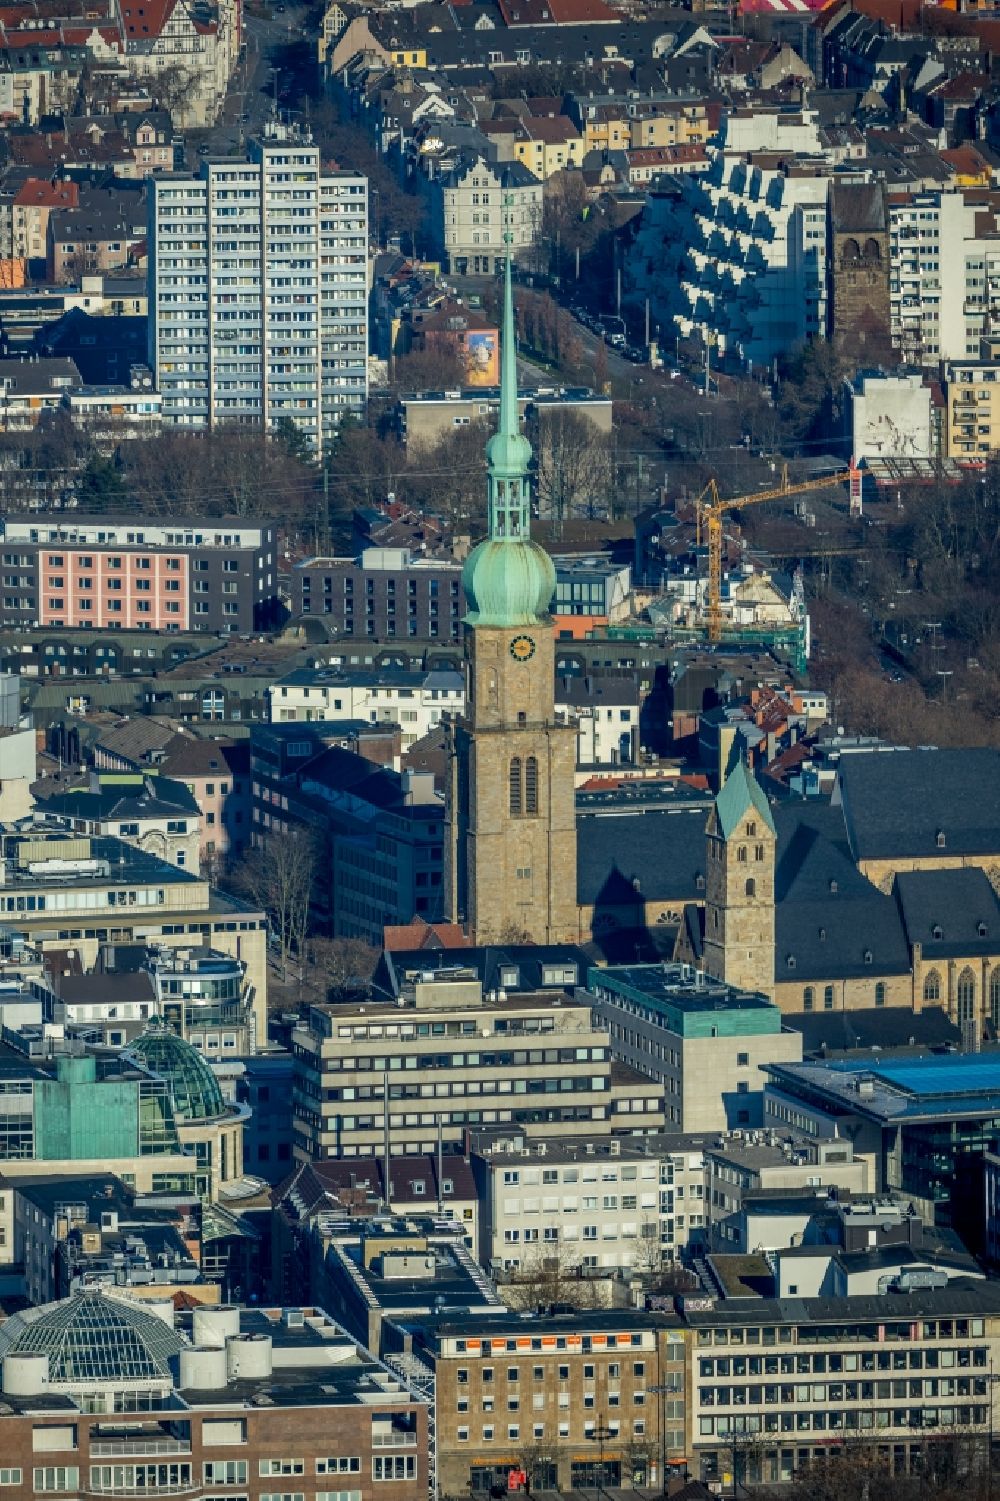 Dortmund von oben - Kirchengebäude der St. Reinoldi in Dortmund im Bundesland Nordrhein-Westfalen, Deutschland